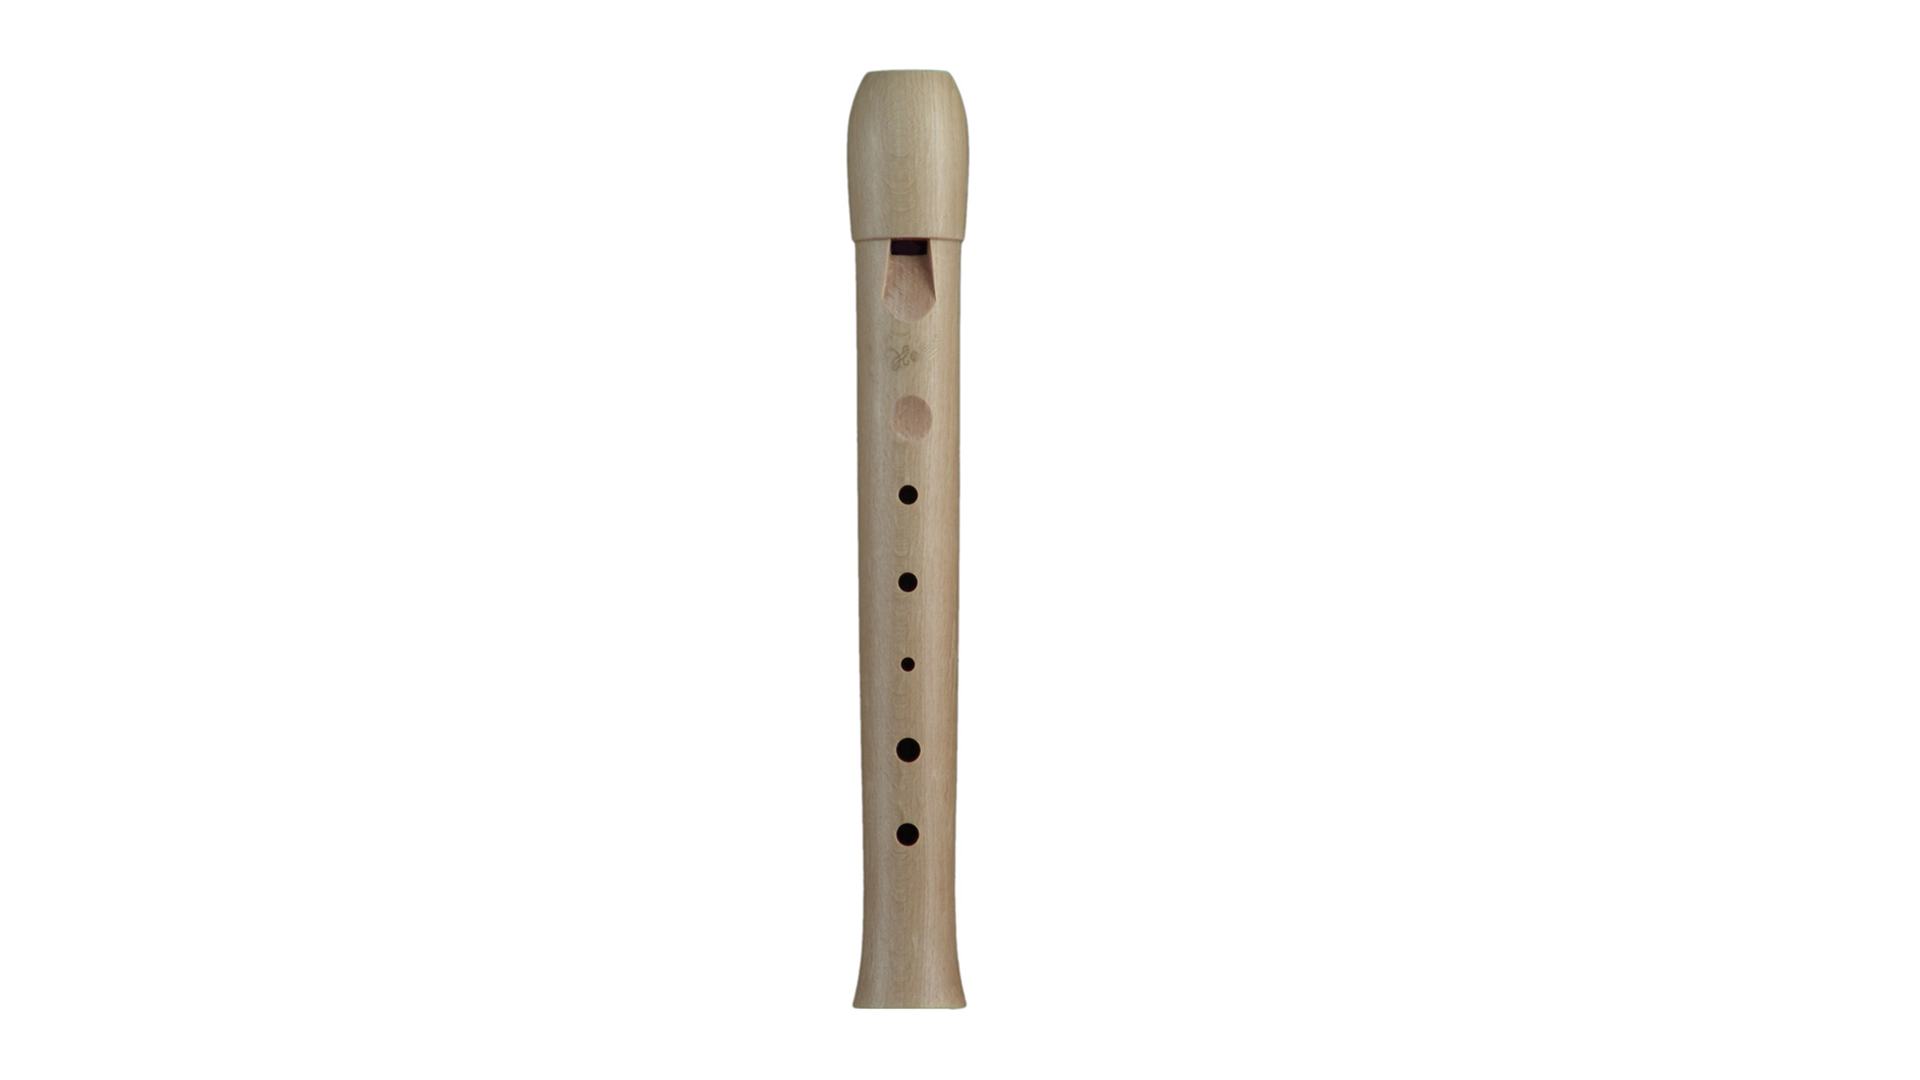 Hopf, "Kindergarten recorder", in g', 6 tones, maple